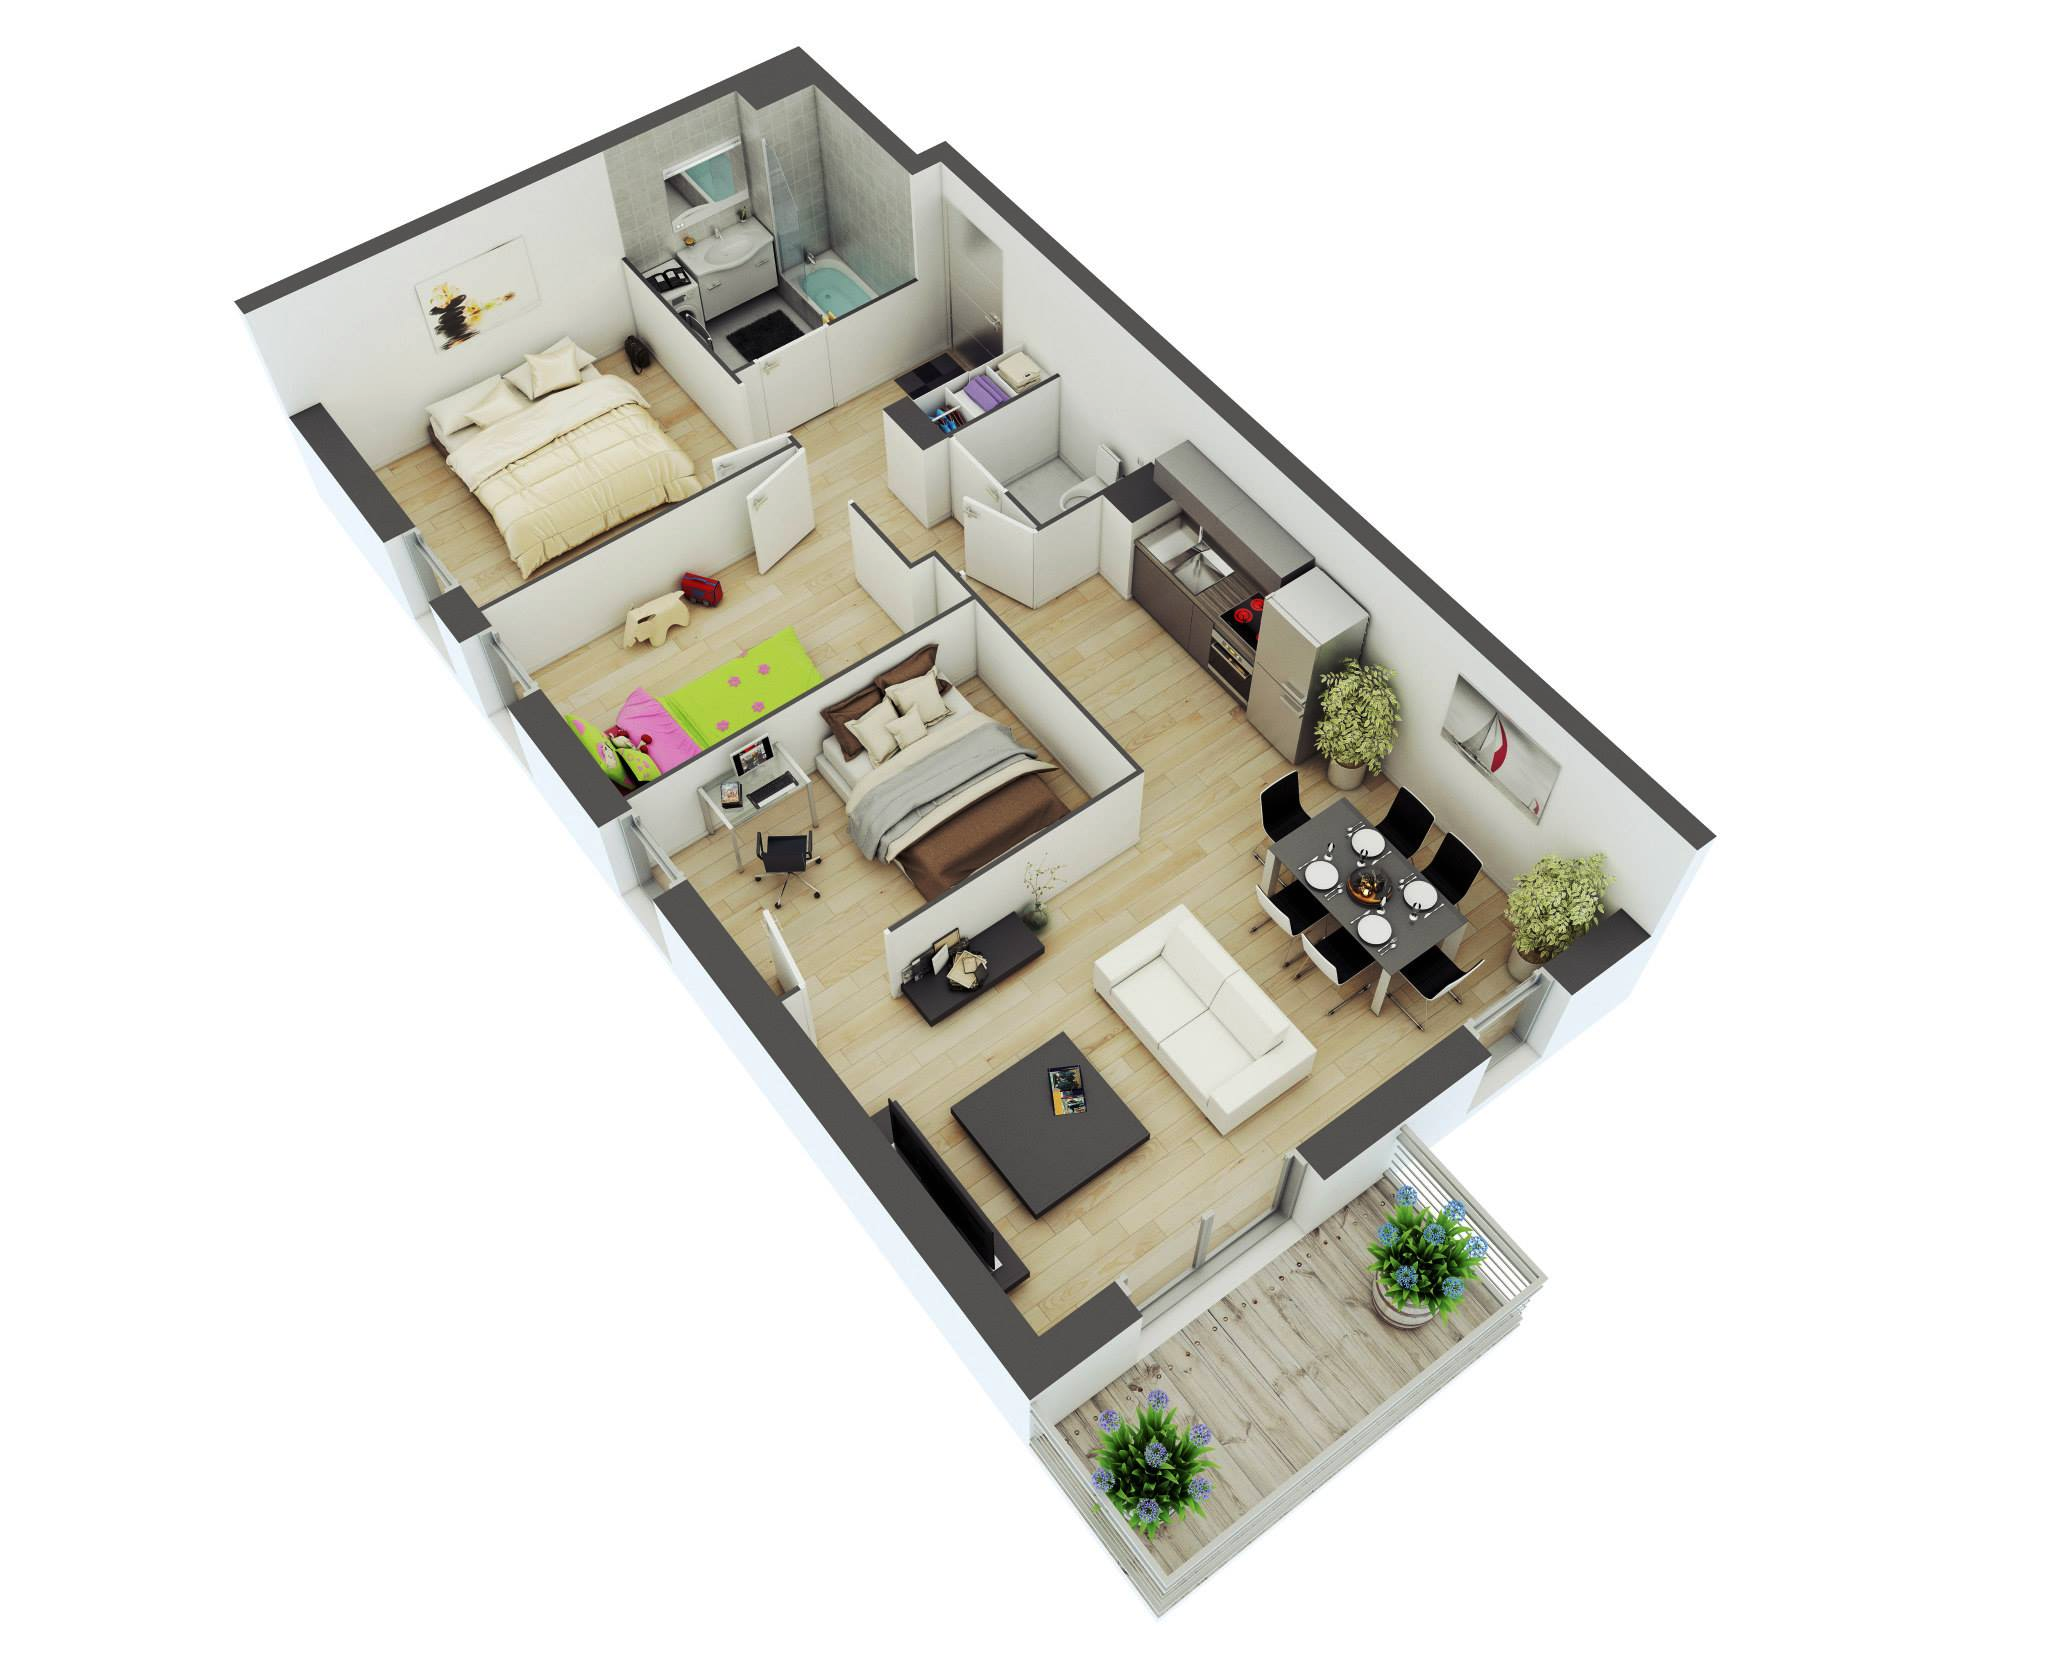 3 Bedroom Rectangular House Plans